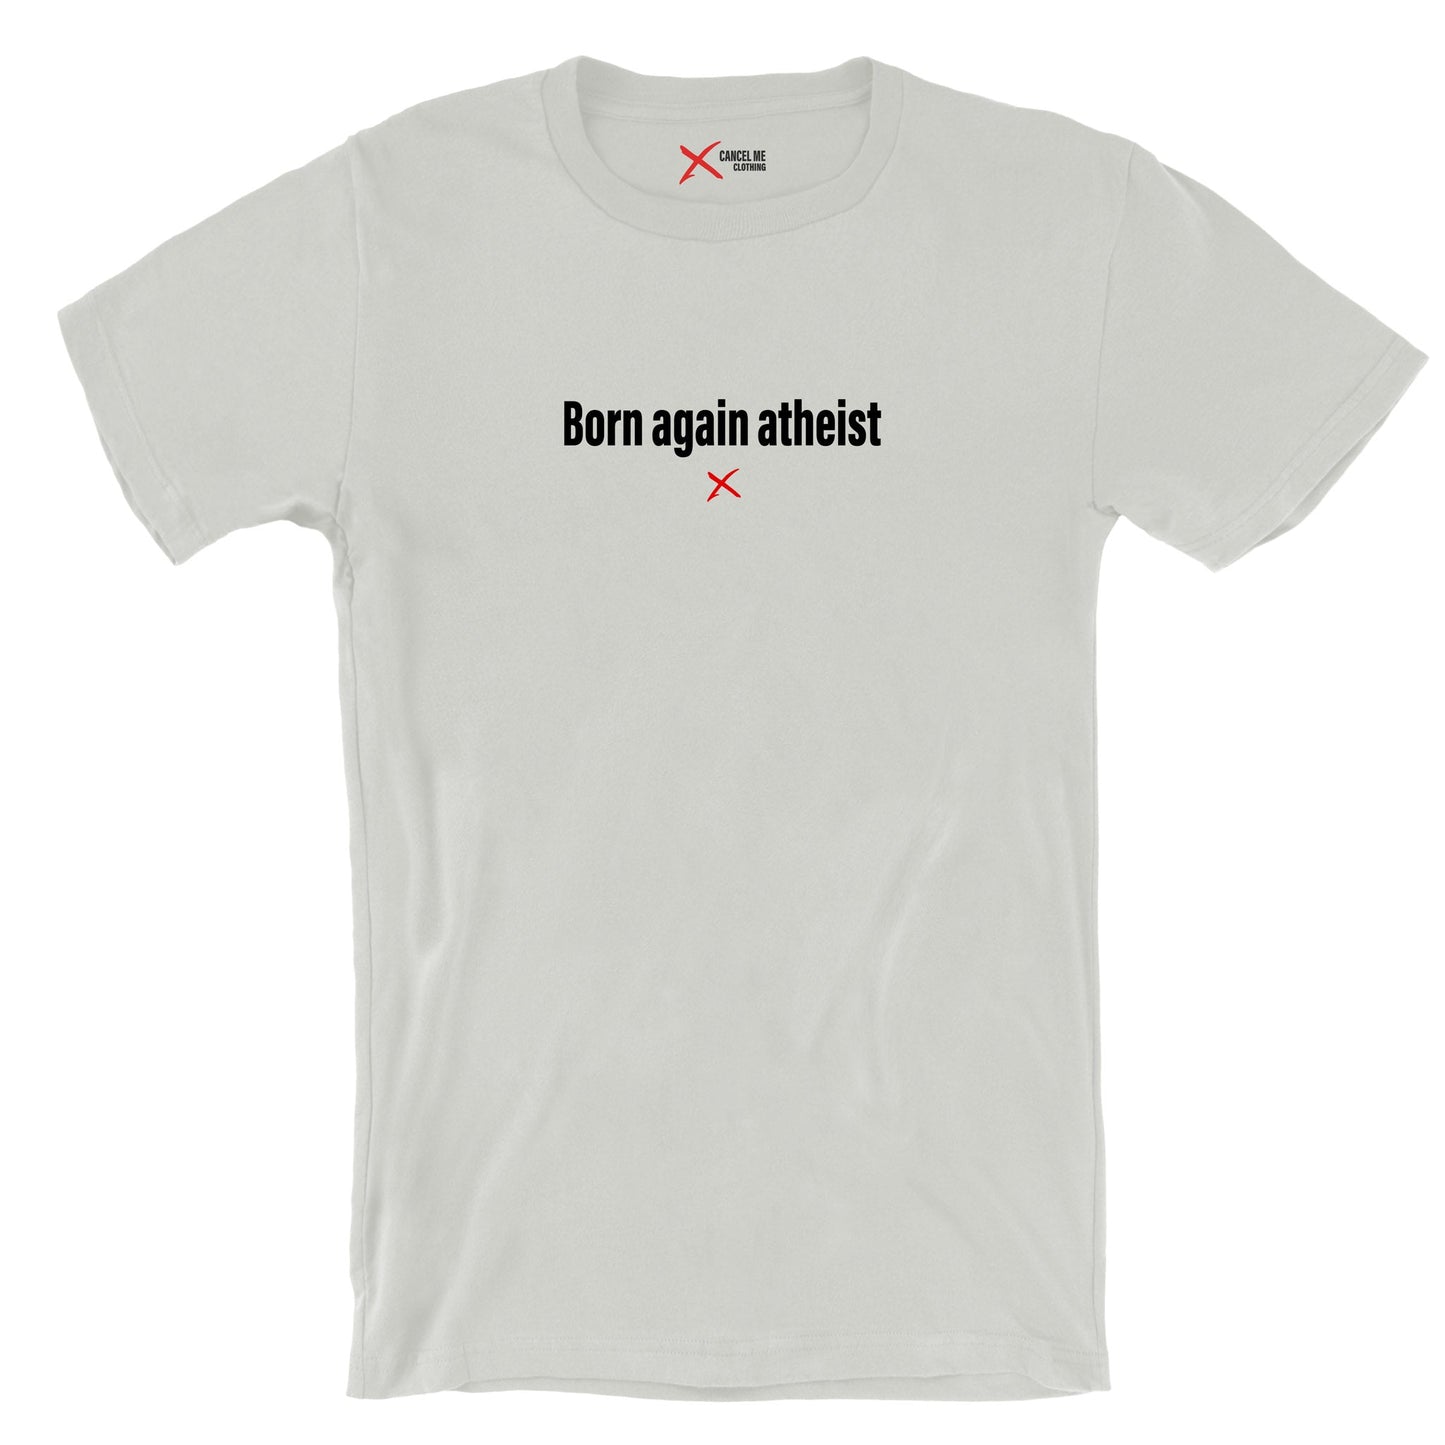 Born again atheist - Shirt